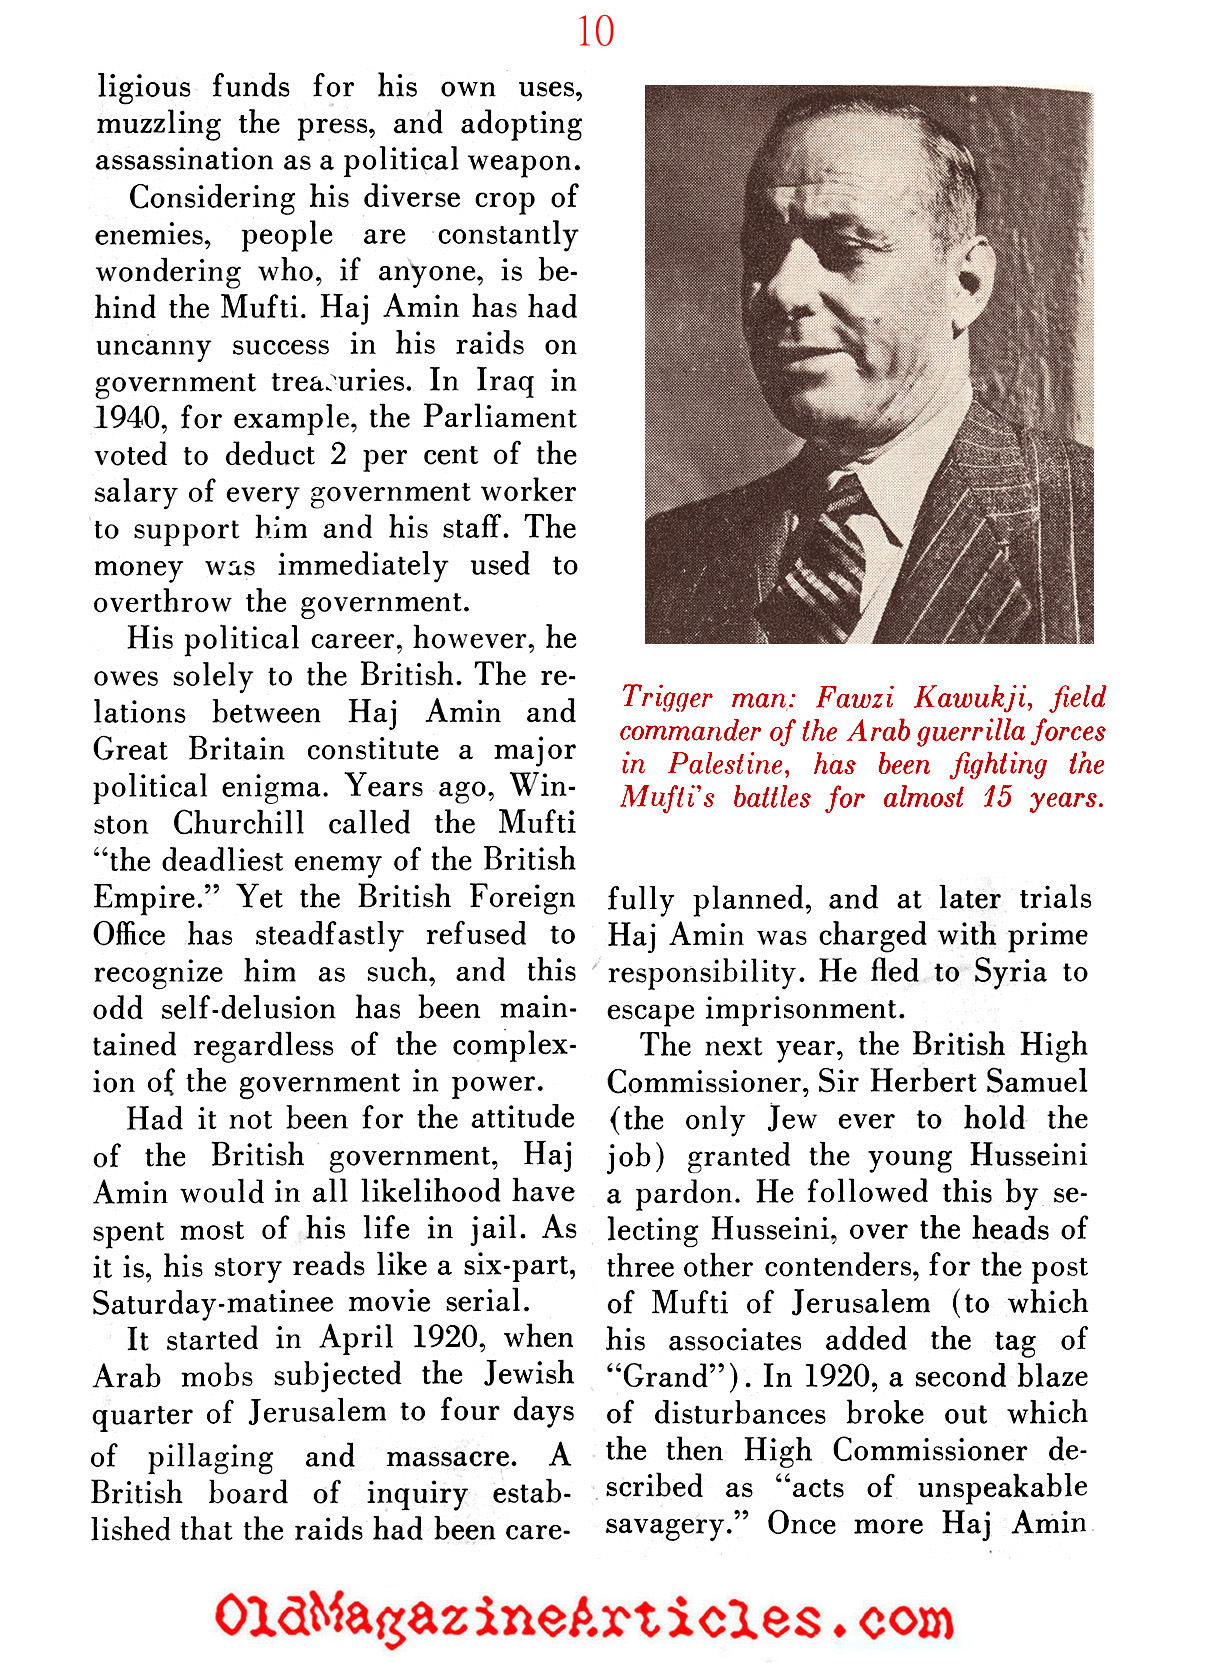 The Nazi's Man in British Palestine ('48 Magazine, 1948)